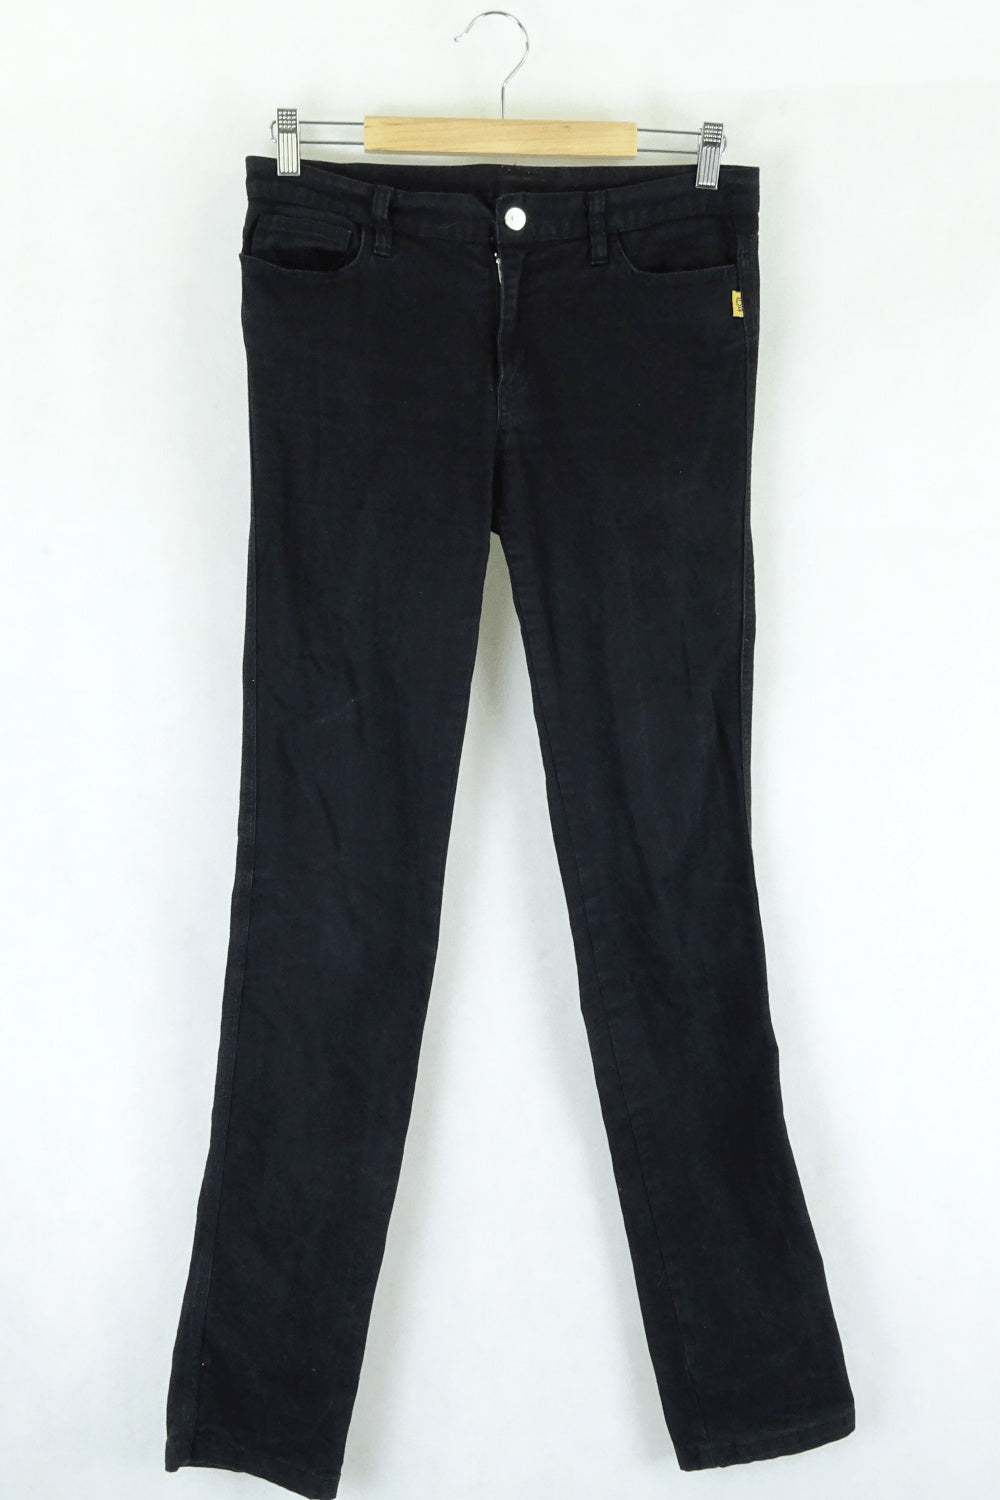 Bettina Liano Black Straight Jeans 10